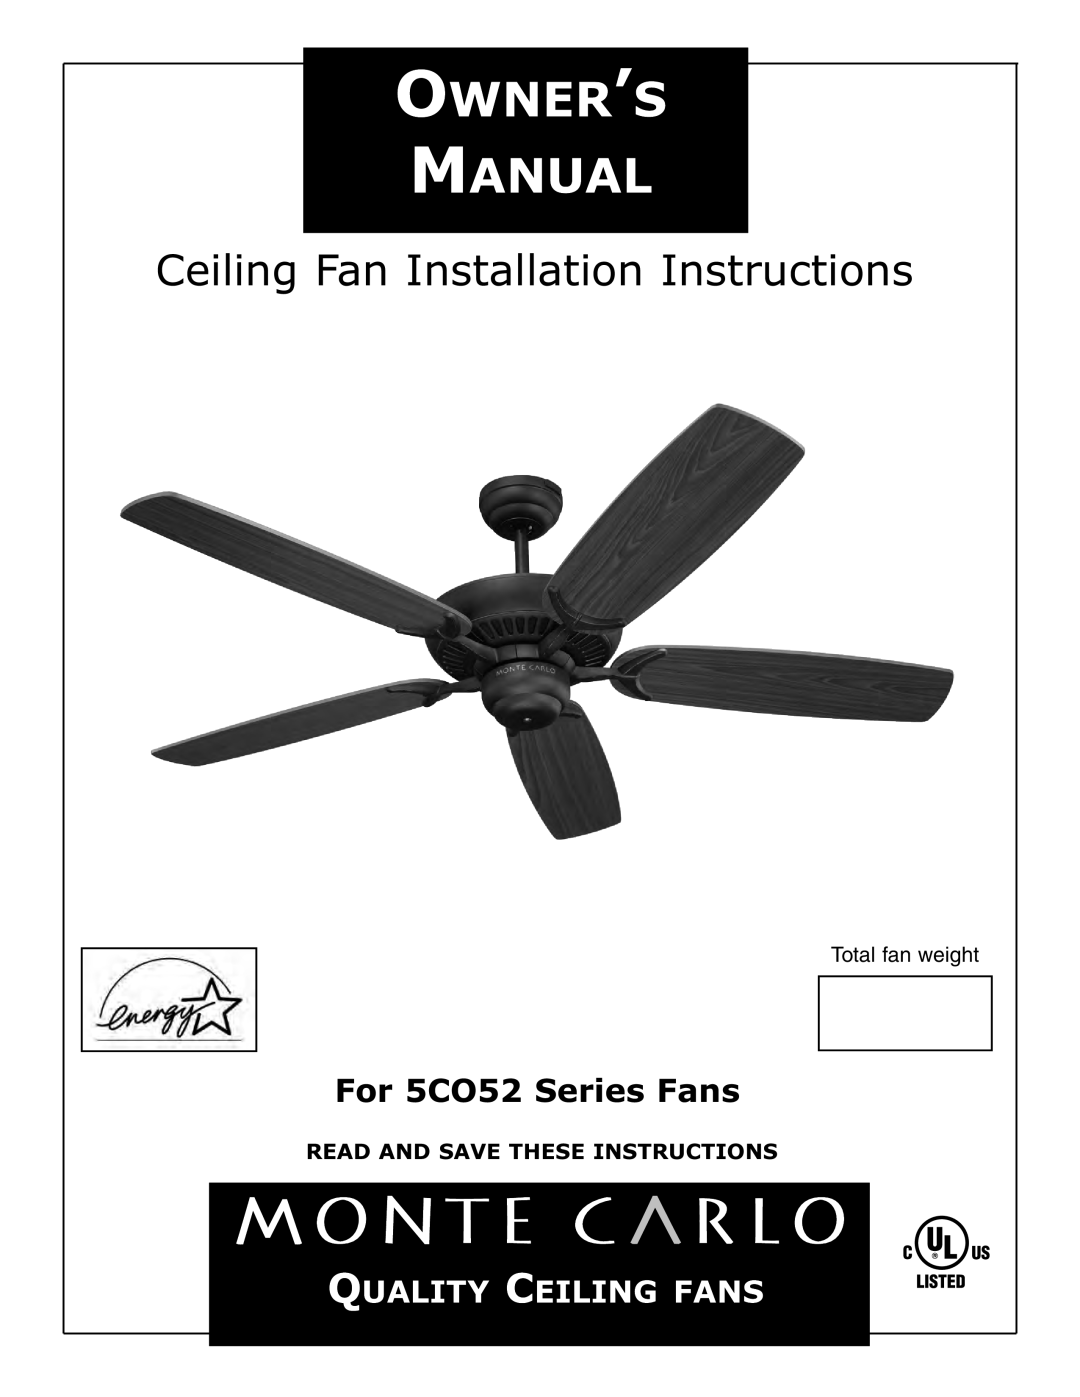 Monte Carlo Fan Company installation instructions Ceiling Fan Installation Instructions, For 5CO52 Series Fans 